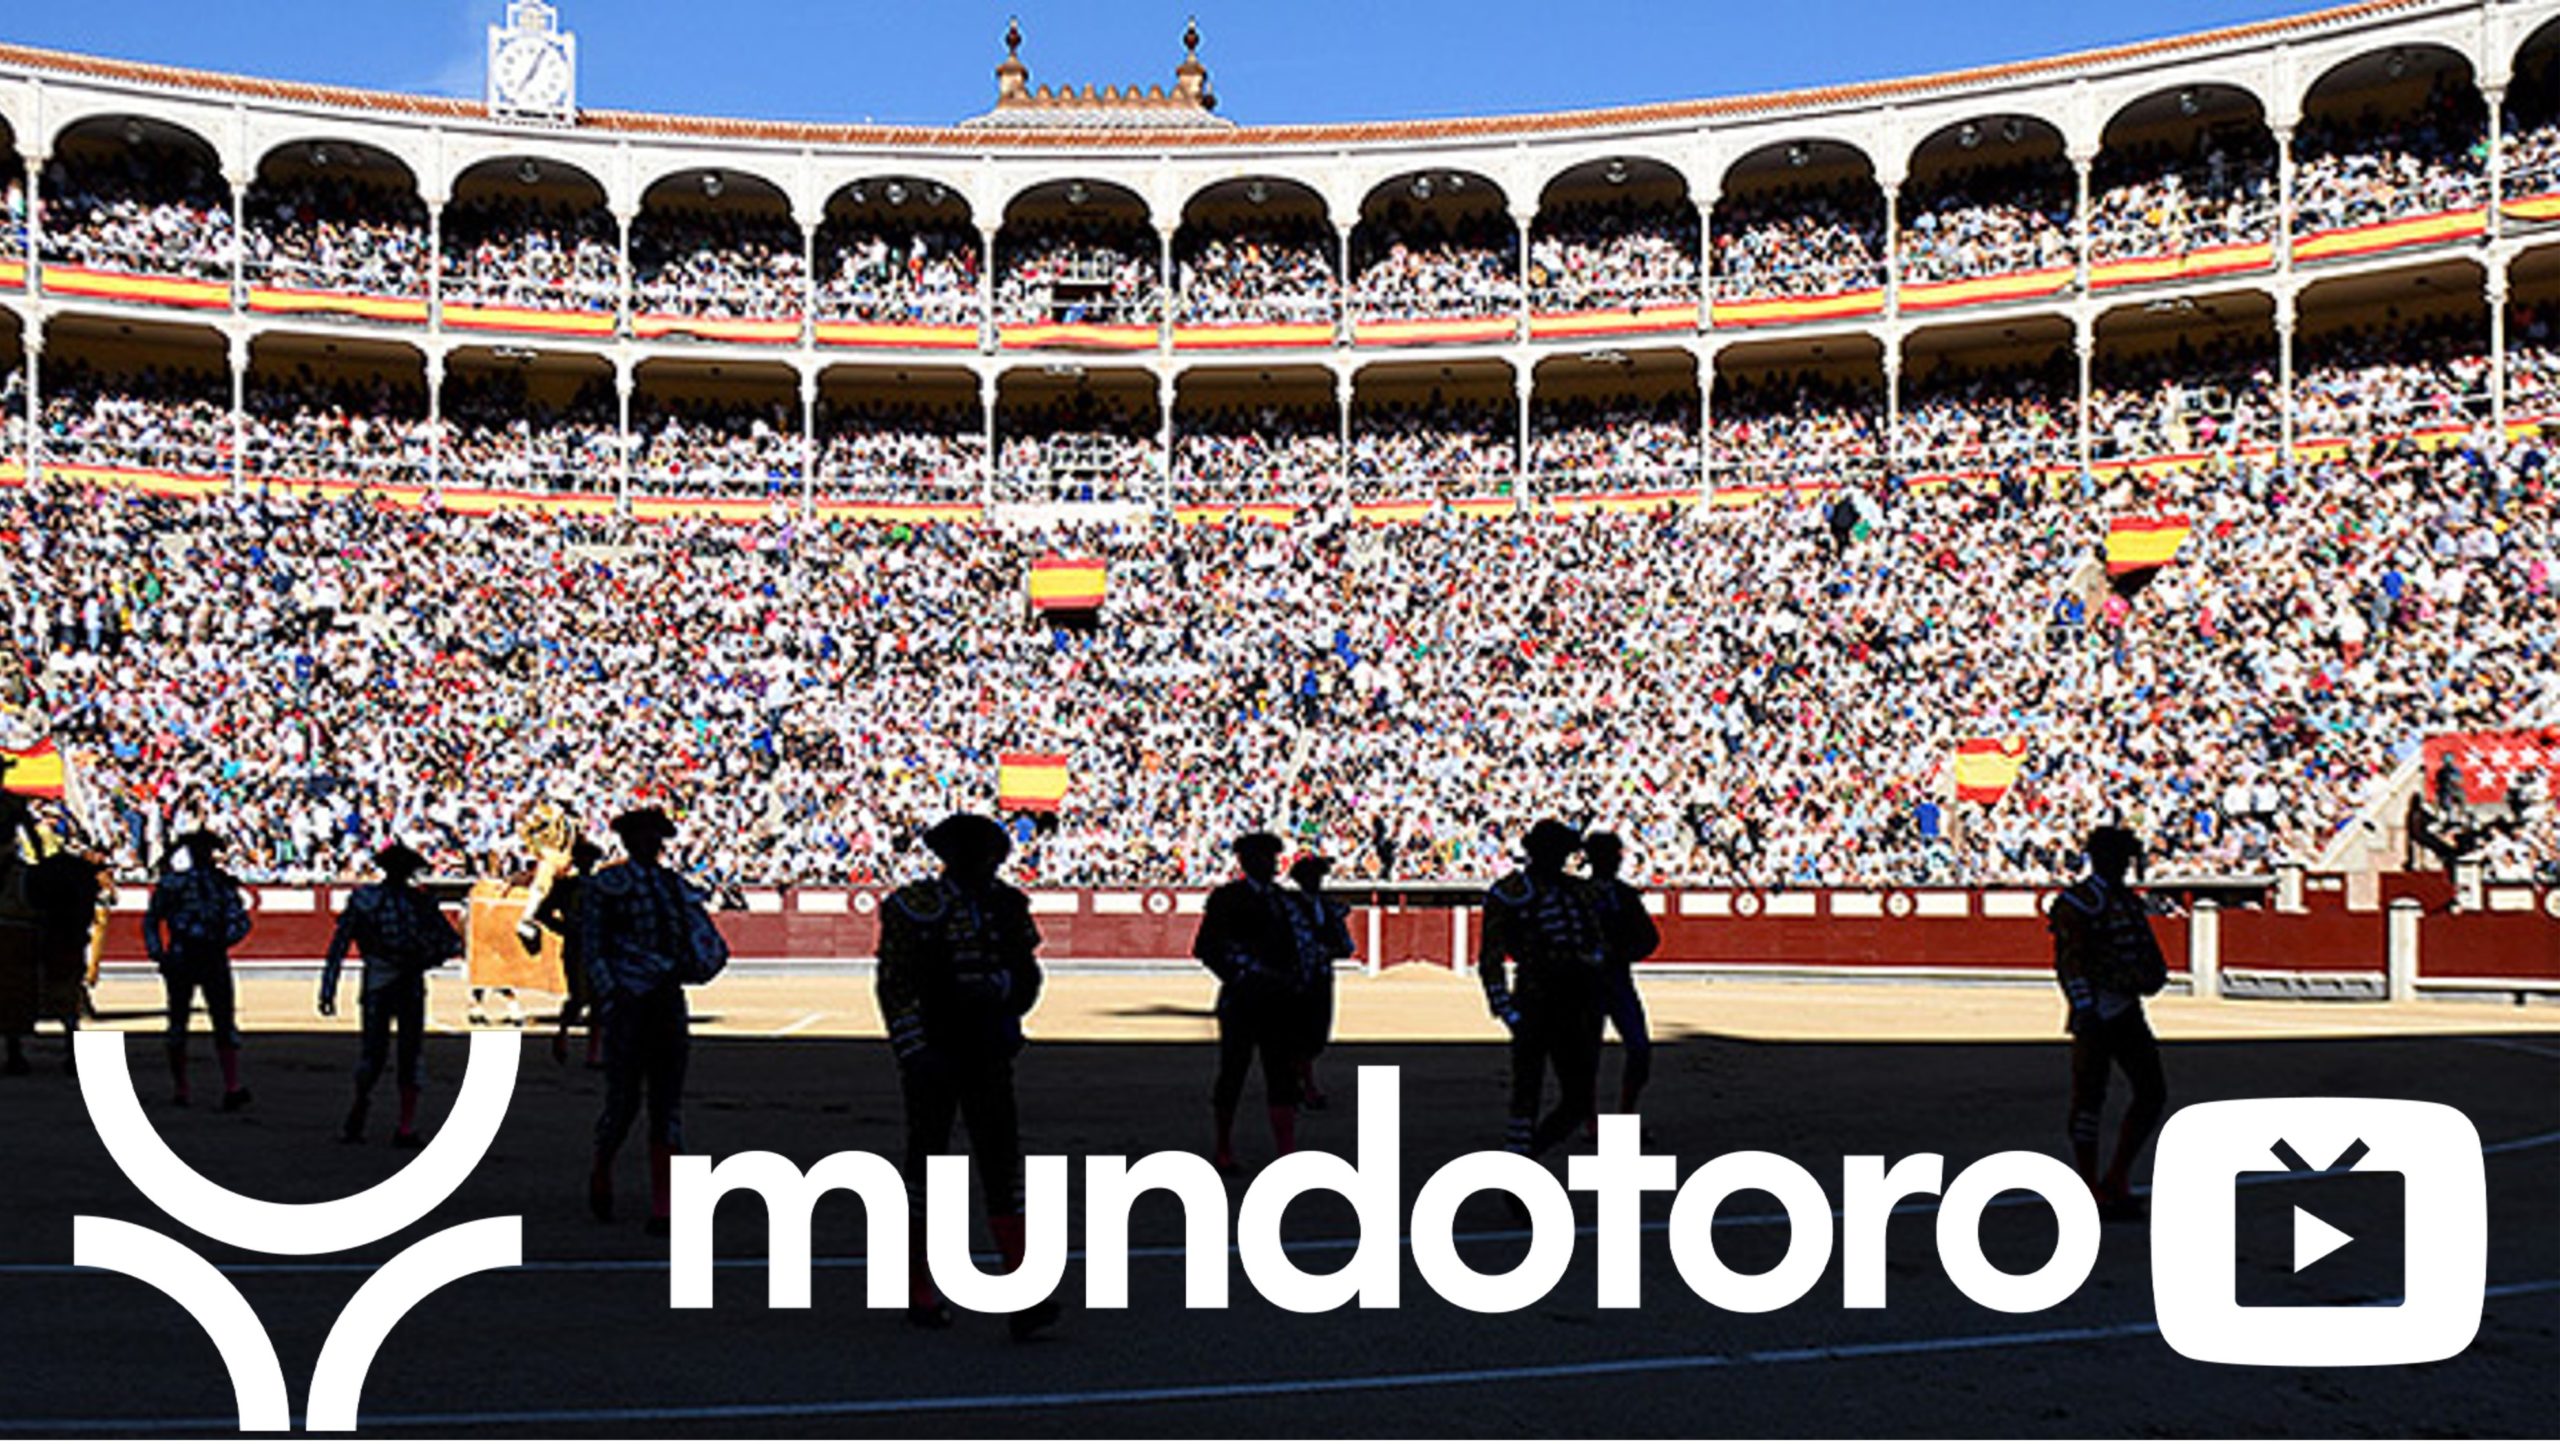 Mundotoro TV ha presentado un nuevo festejo desde Las Ventas que abrirá su programación de agosto